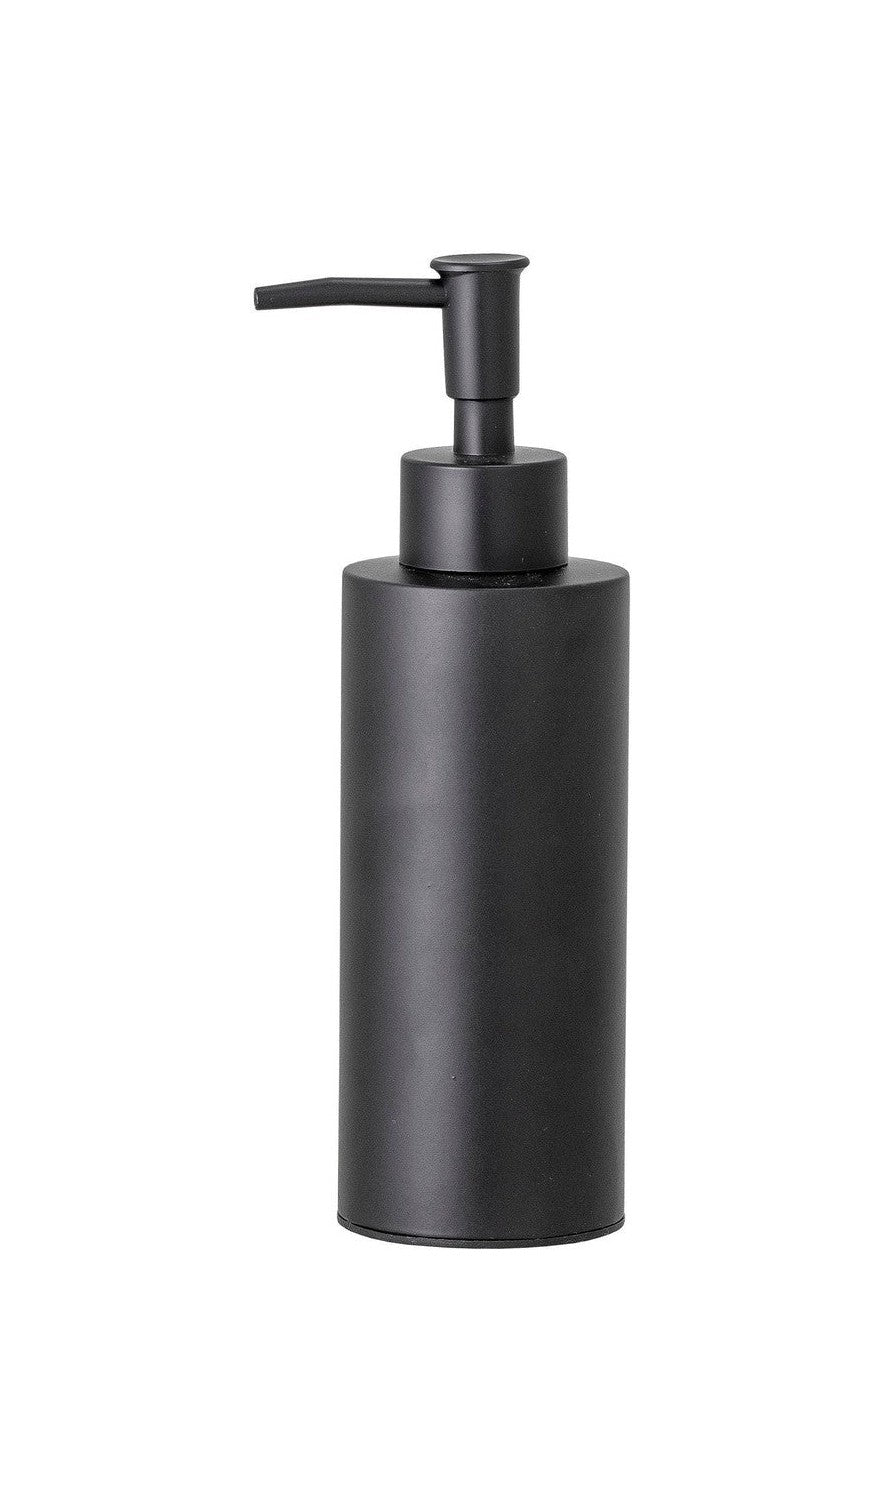 Bloomingville Loupi Soap Dispenser, Black, Stainless Steel